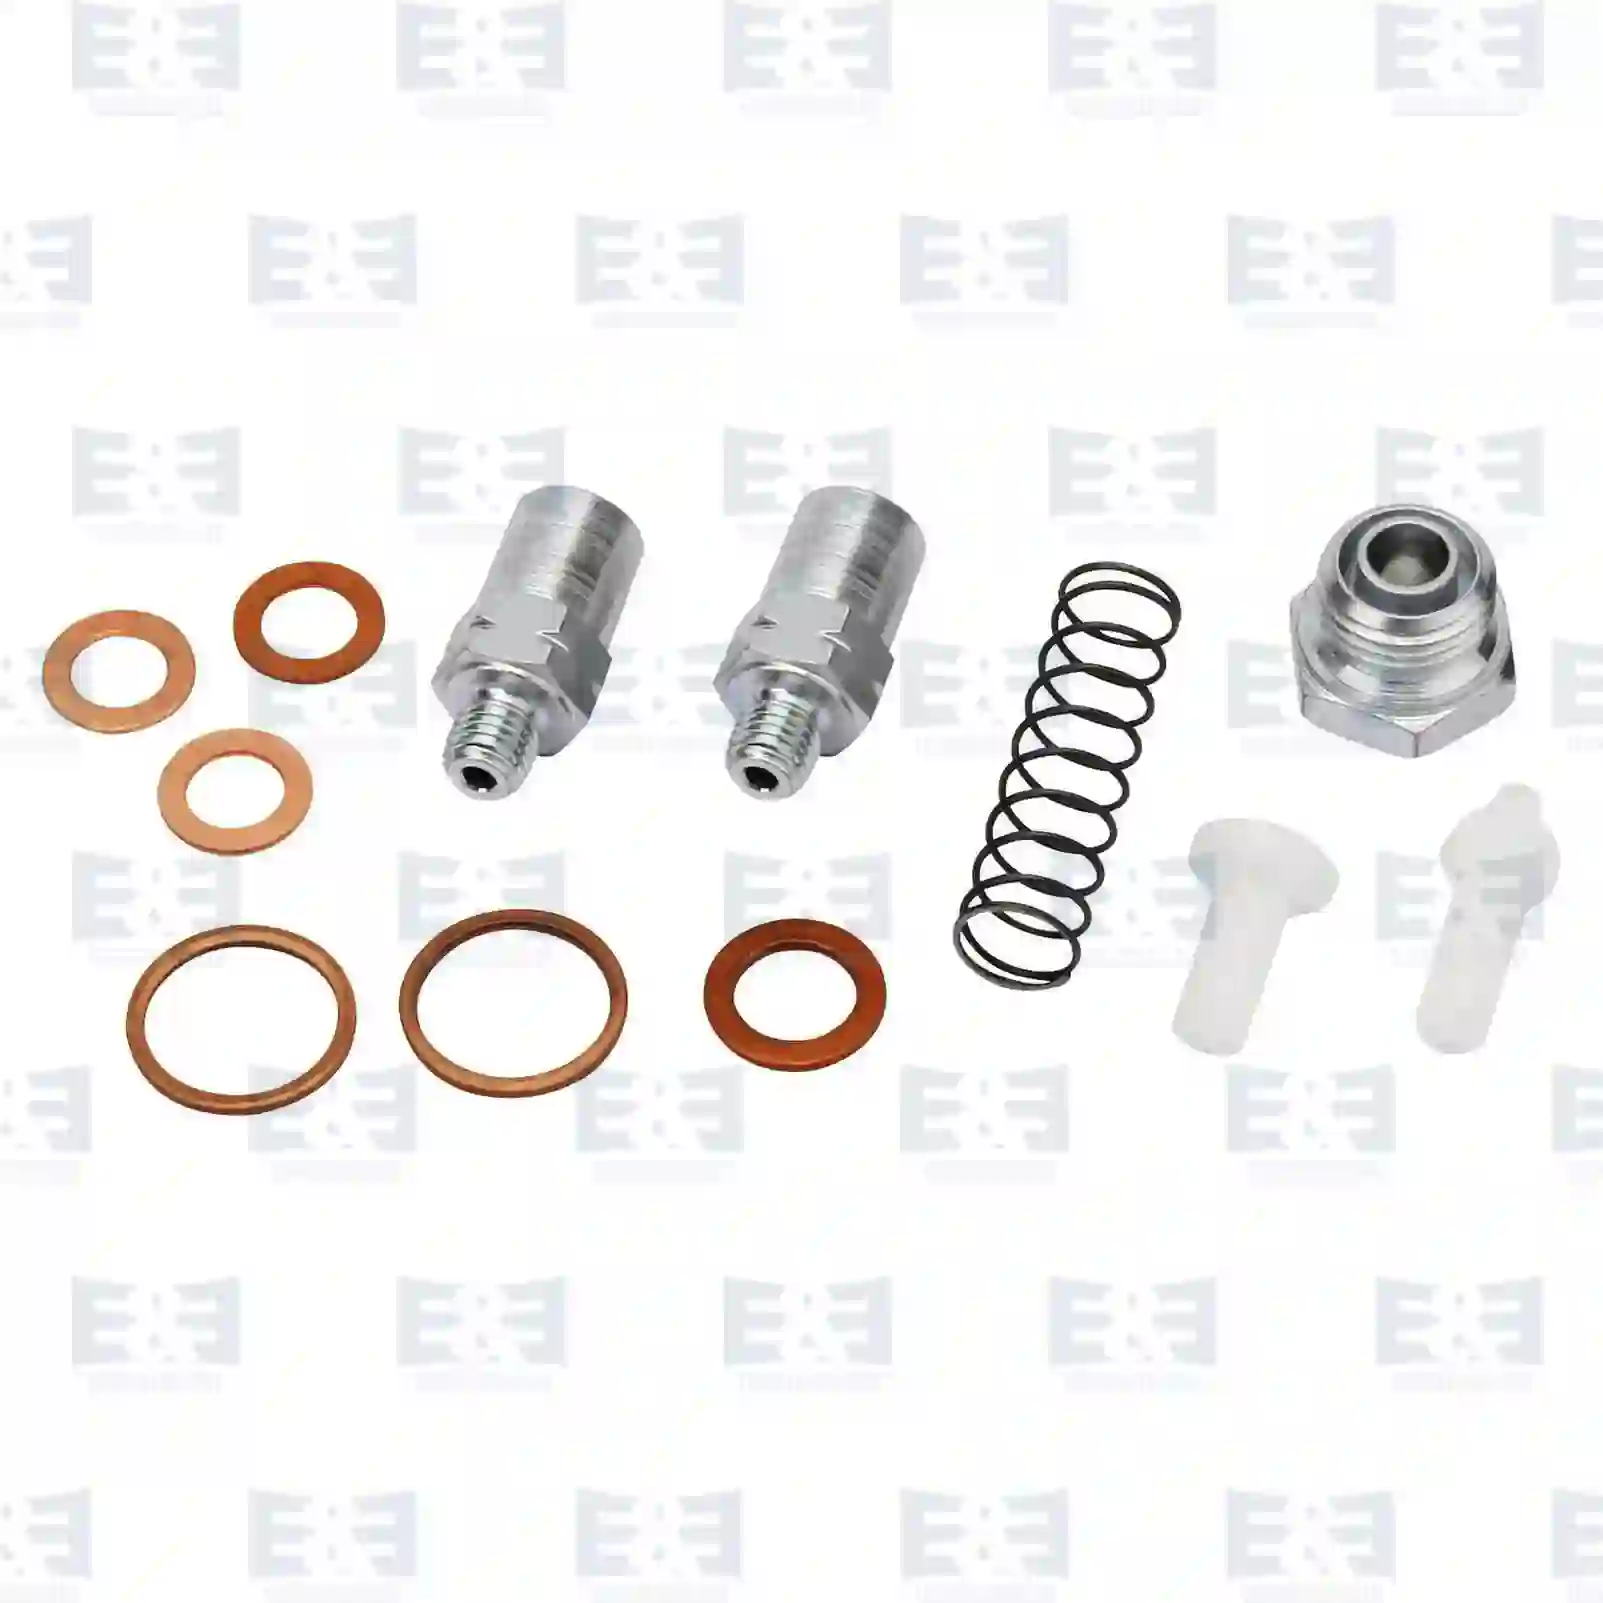  Valve kit || E&E Truck Spare Parts | Truck Spare Parts, Auotomotive Spare Parts